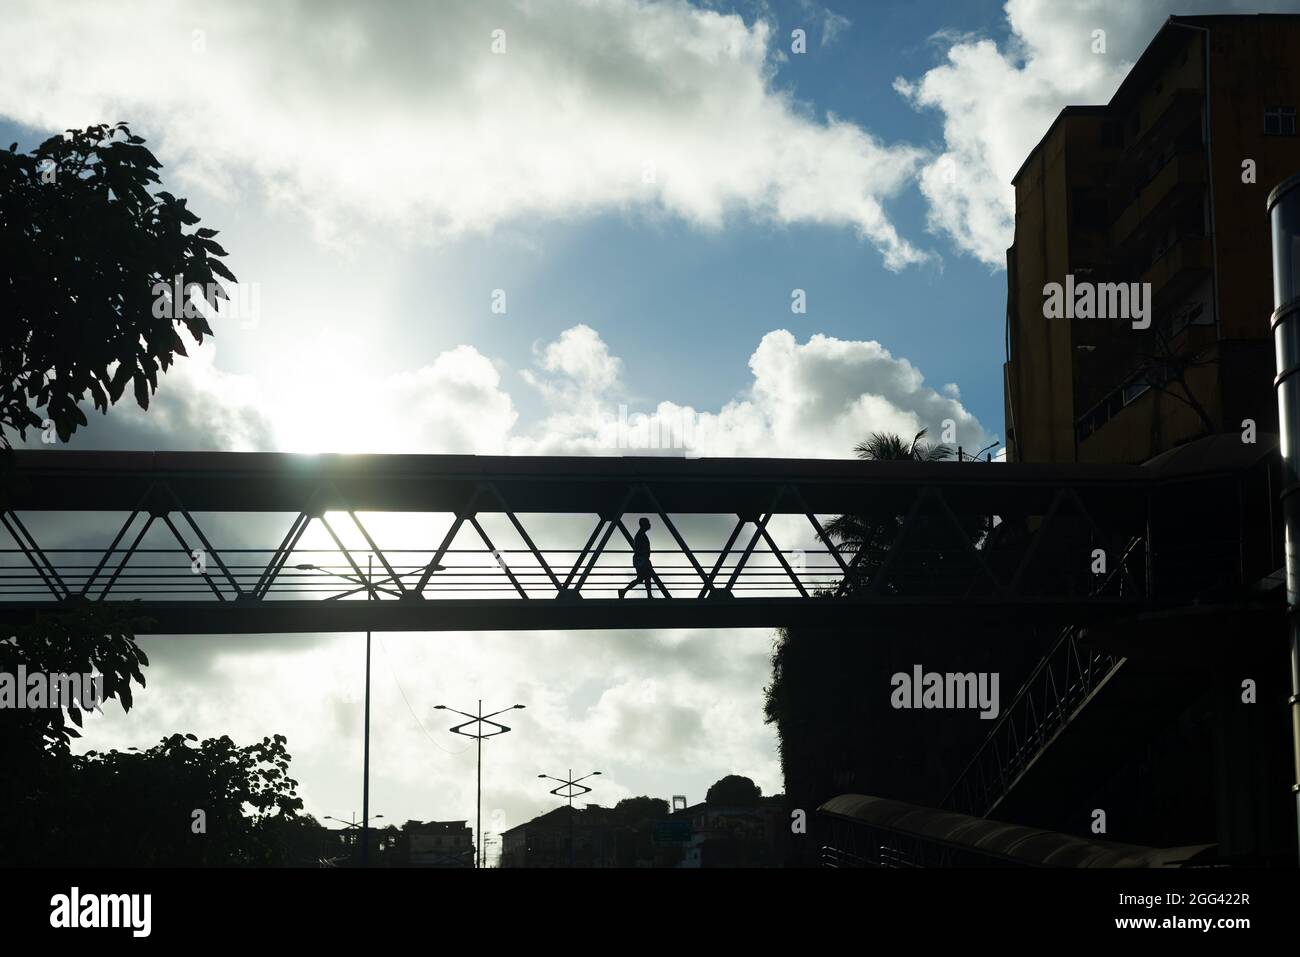 Salvador, Bahia, Brasile - 06 giugno 2021: Silhouette di una persona che cammina sulla passerella nel tardo pomeriggio. Foto Stock